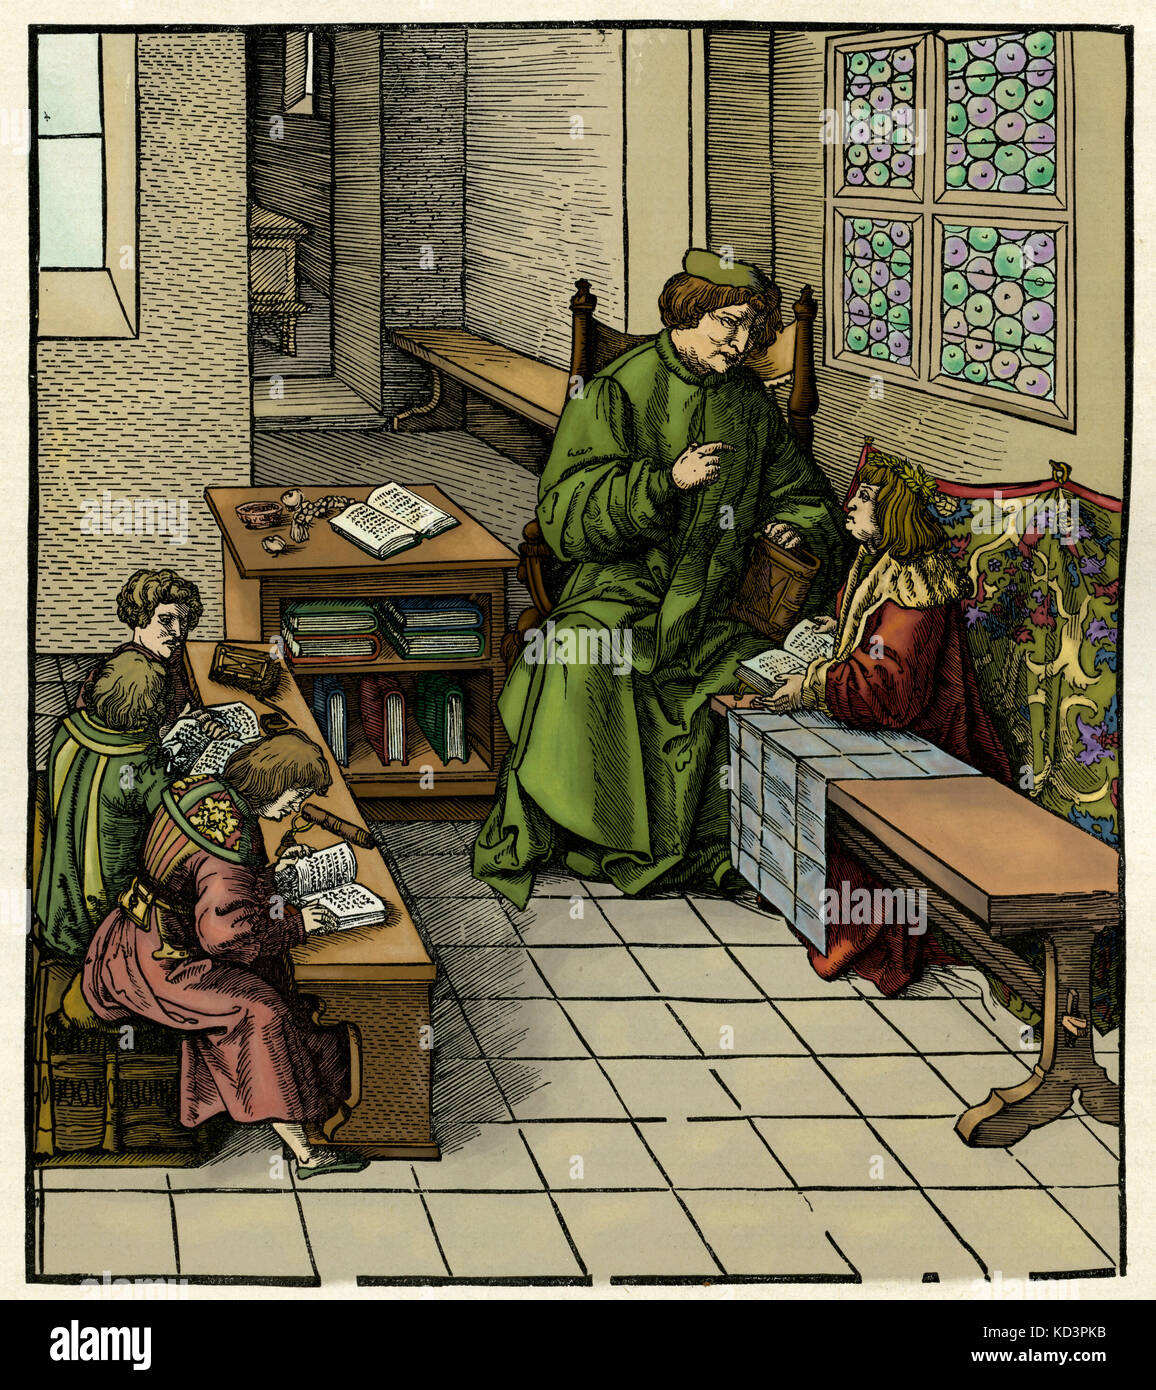 Maximilian I, Heiliger römischer Kaiser (22 März 1459 – 12 Januar 1519) in seiner Jugend seine Bildung zu erhalten. Holzschnitt-Illustration von Hans Burgkmair (1472-1531) Stockfoto